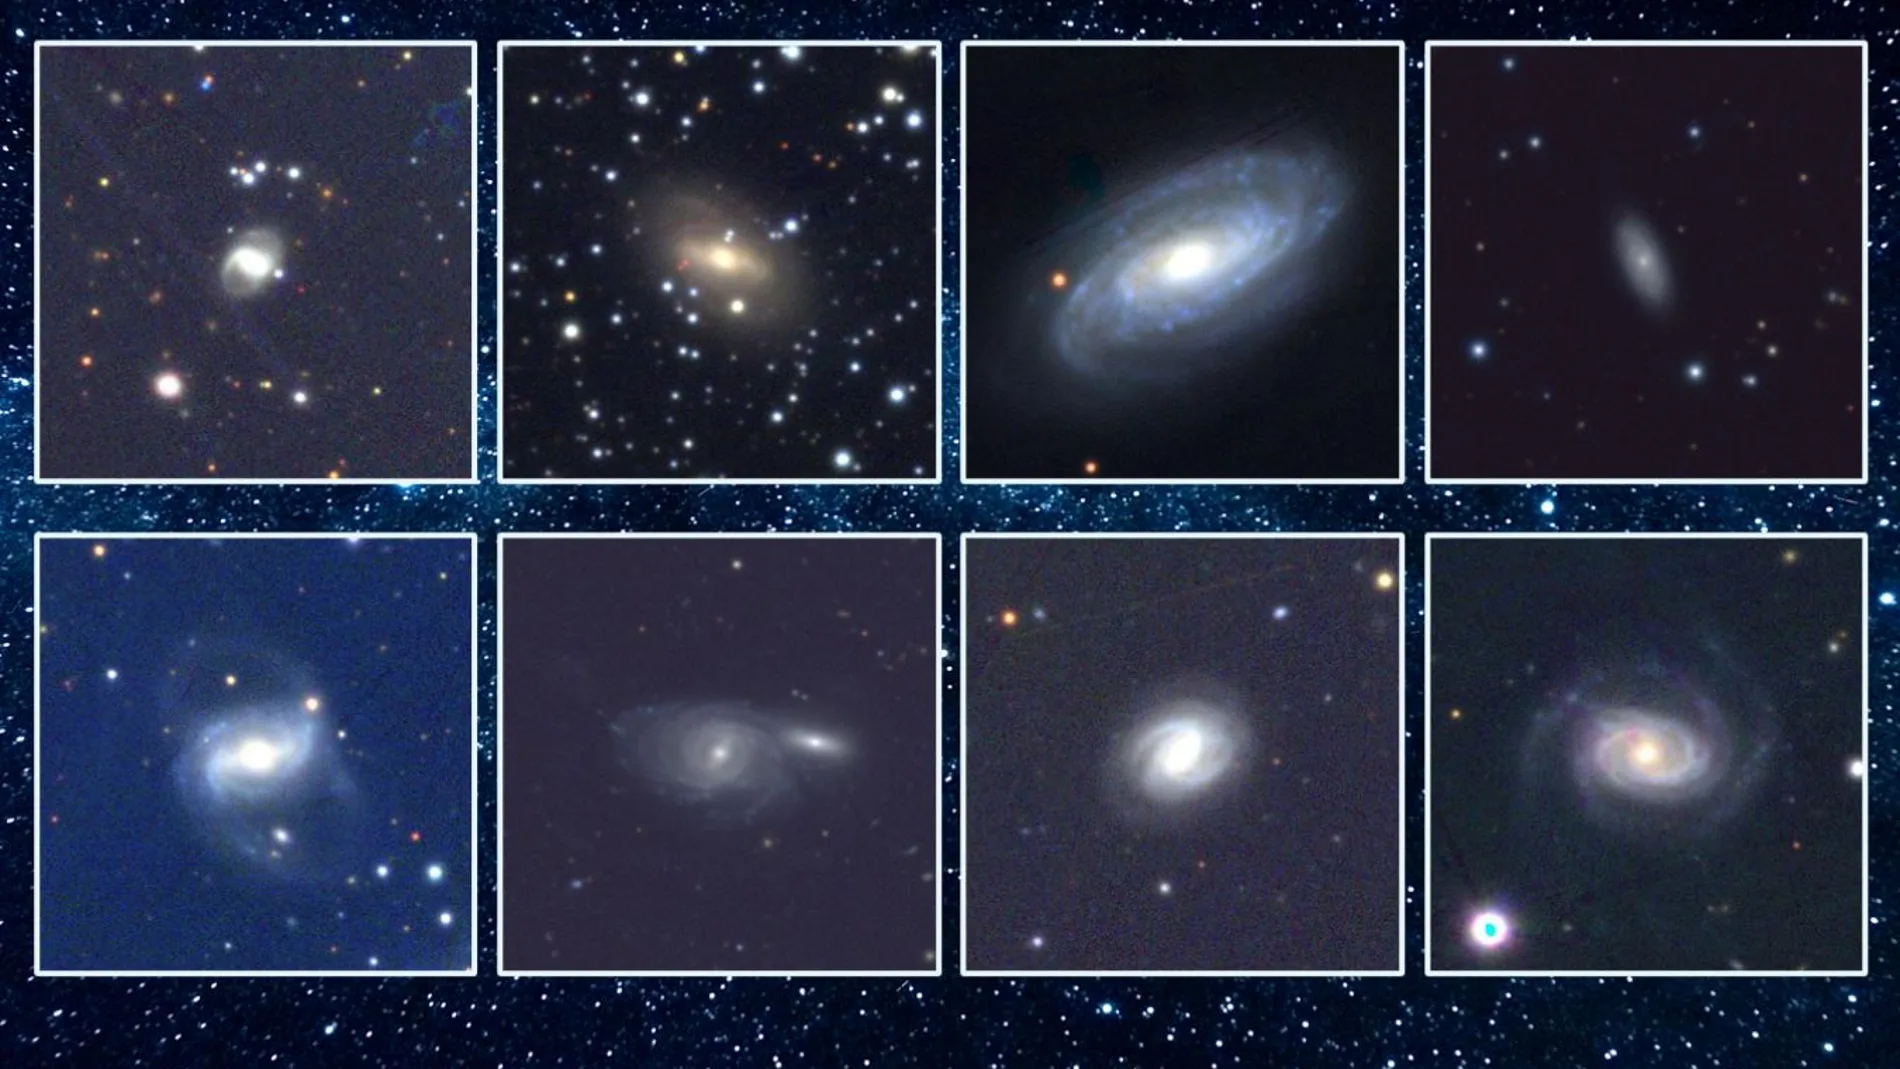 Detectados 18 nuevos agujeros negros devorando estrellas cercanas a la Tierra